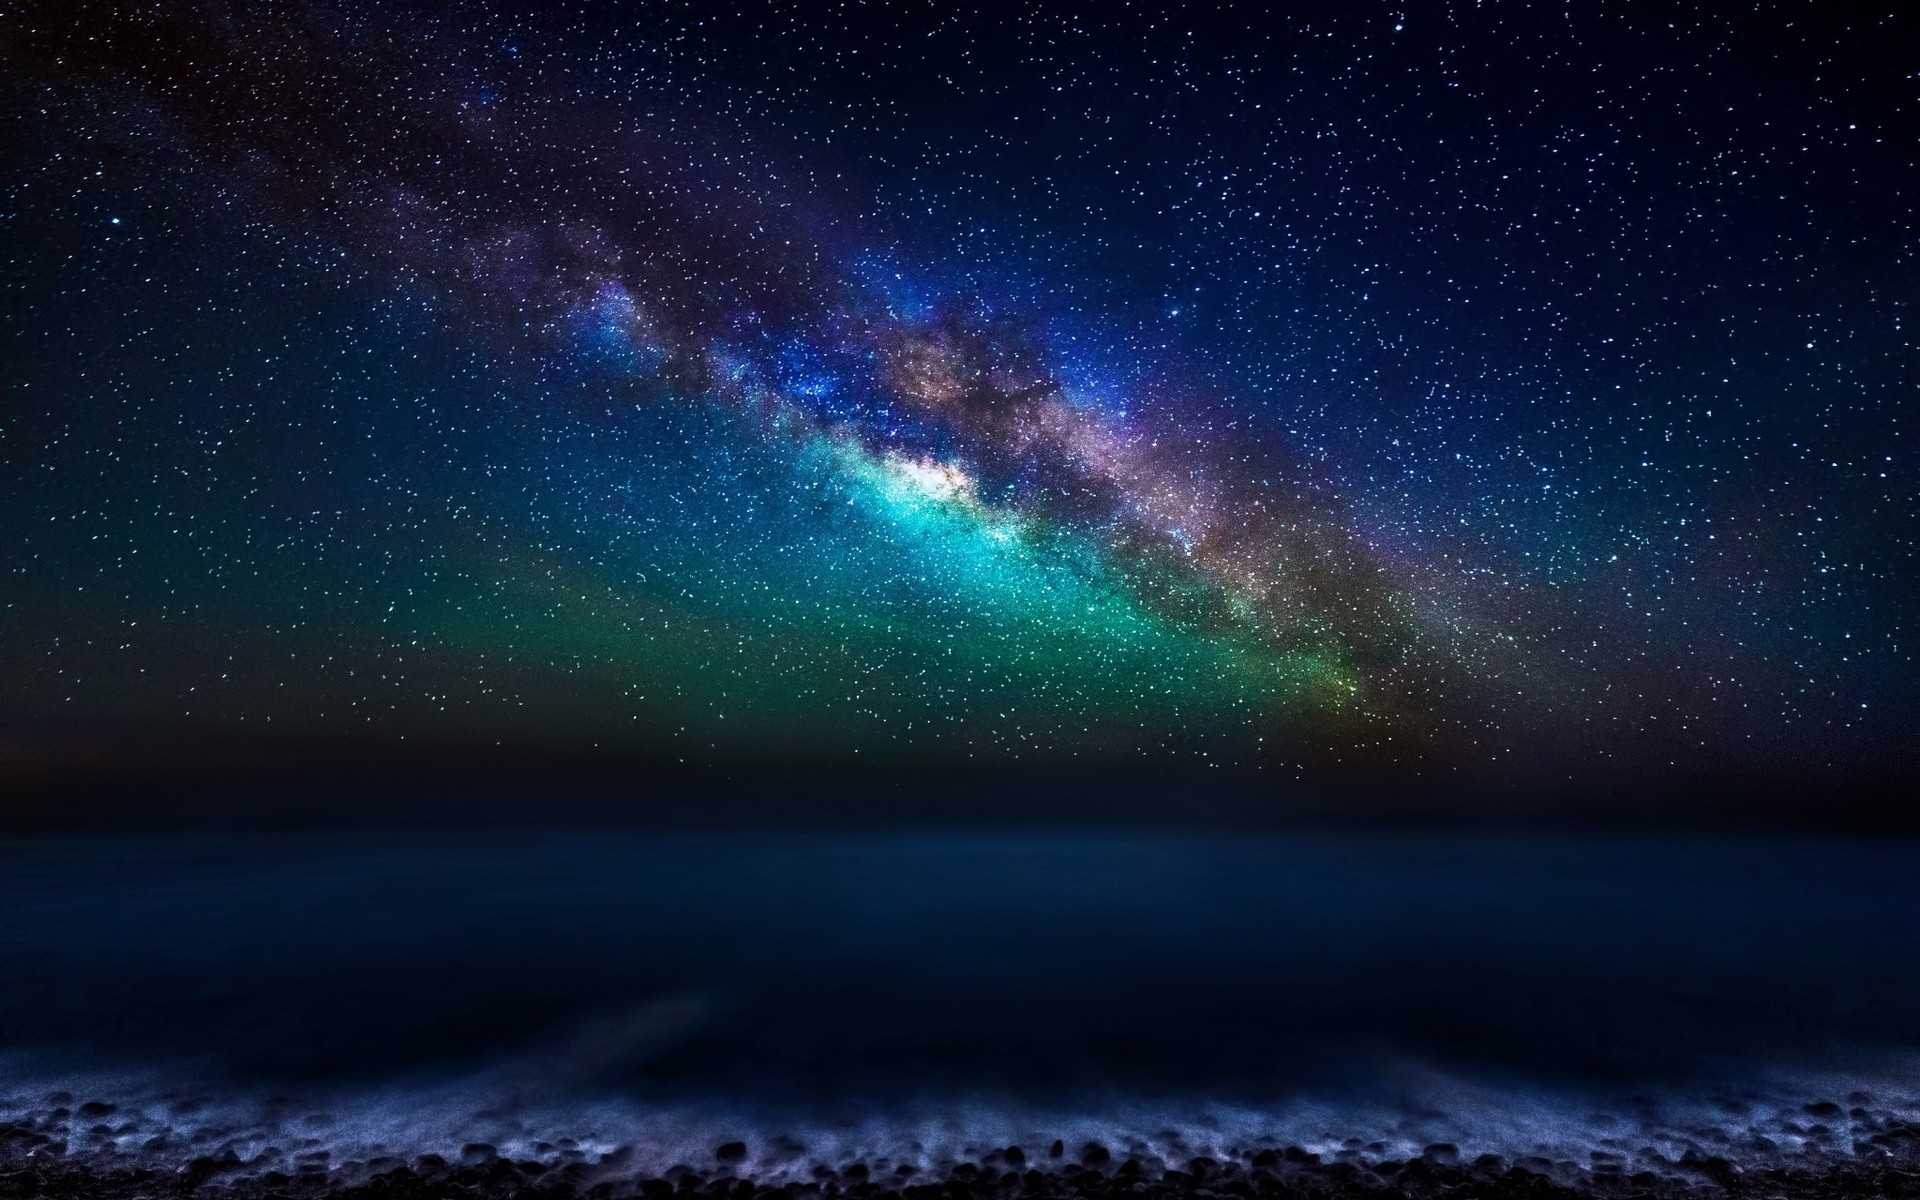 пейзажи астрономия галактика луна разведка небо планеты пространство темный туманность солнце наука созвездие атмосфера природа свет астрология аннотация на открытом воздухе млечный путь канарские острова океан ночь звезды